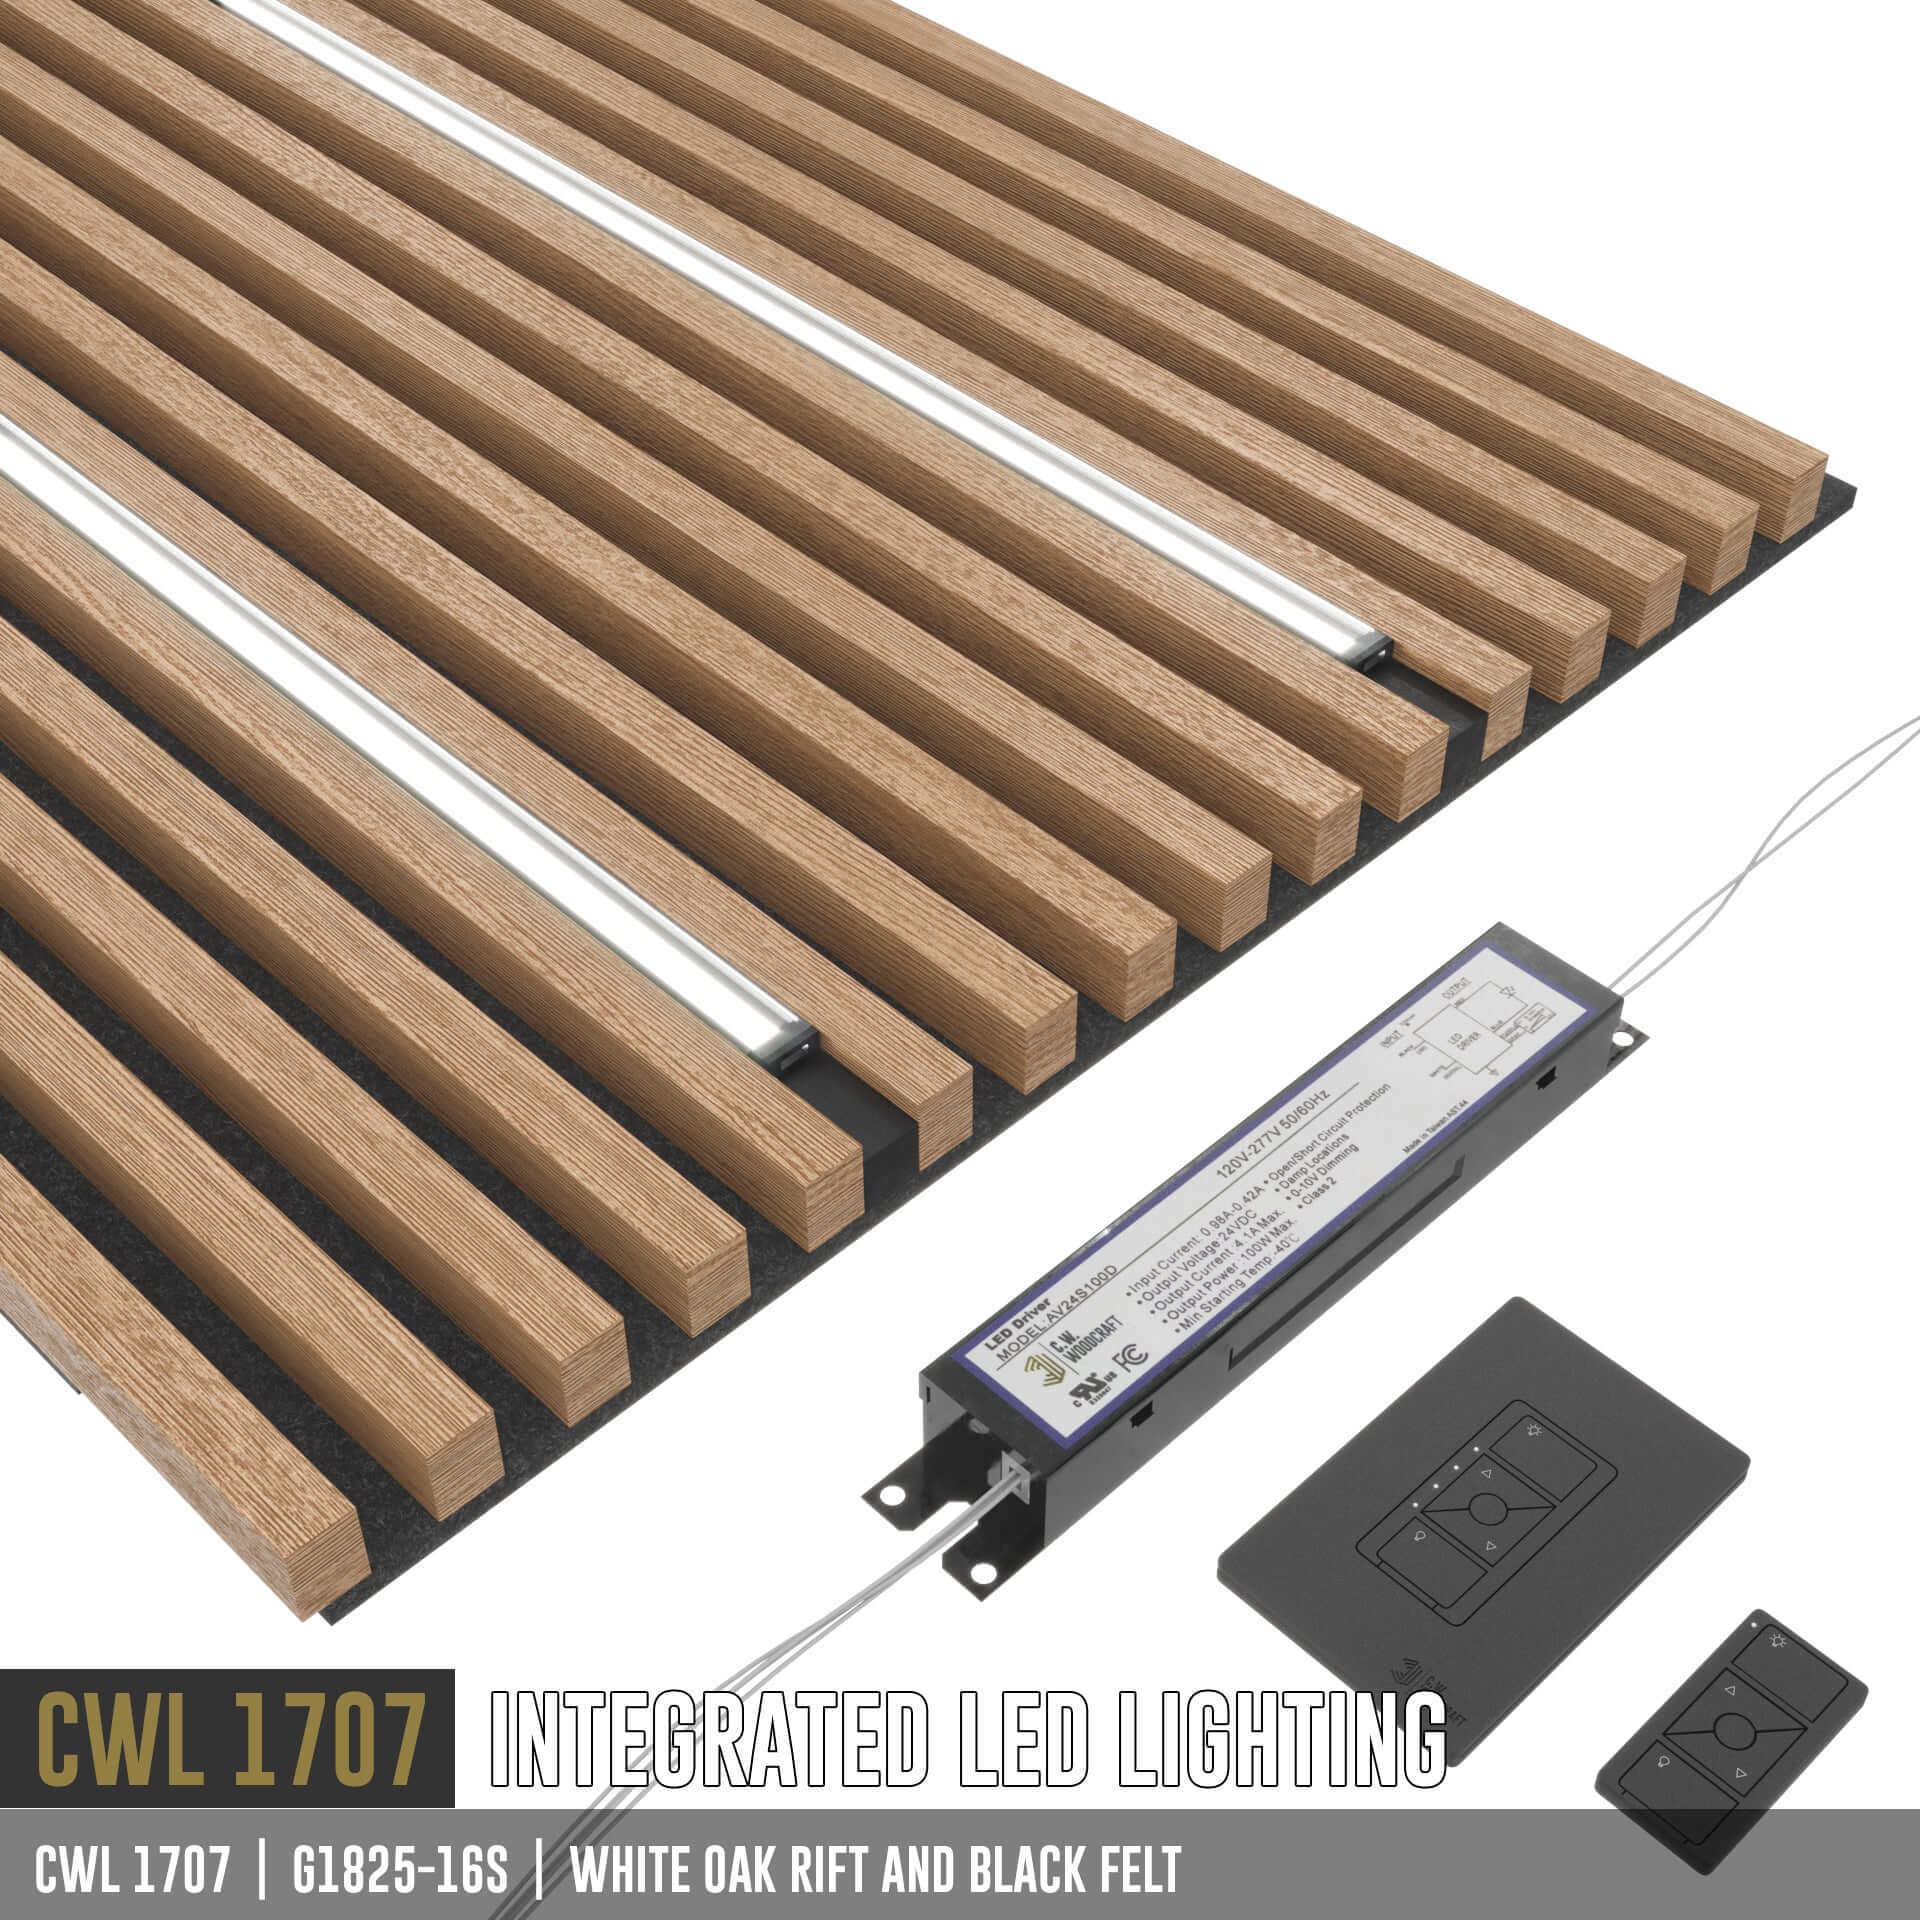 CWL 1707 | LED Lighting for wood panels